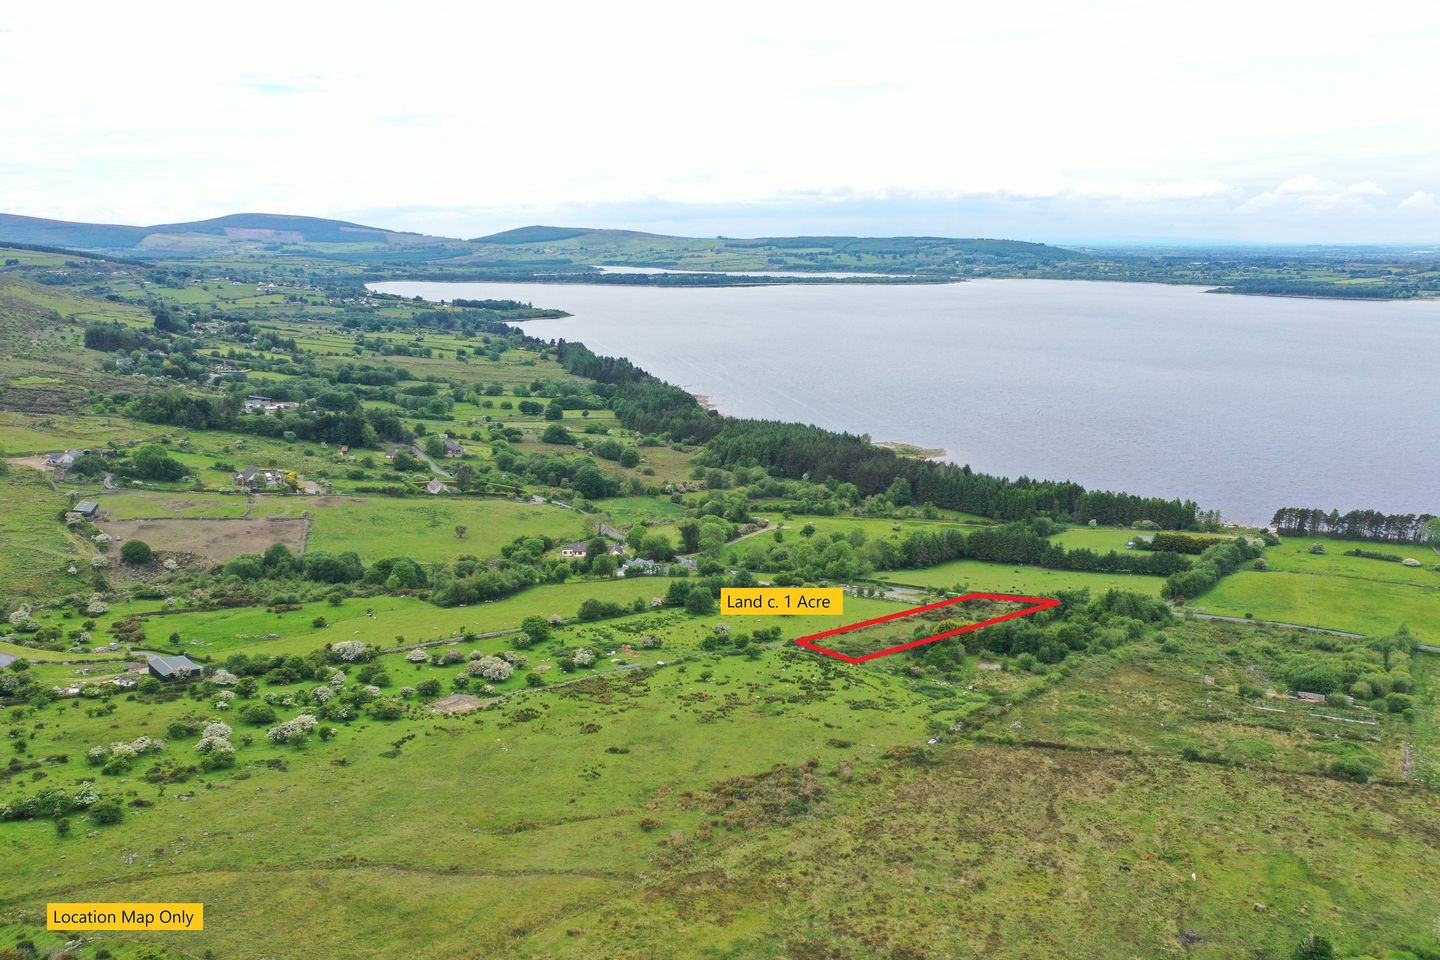 Land C. 1 Acres/ 0.40 Hectares, Ballyknockan, Co. Wicklow